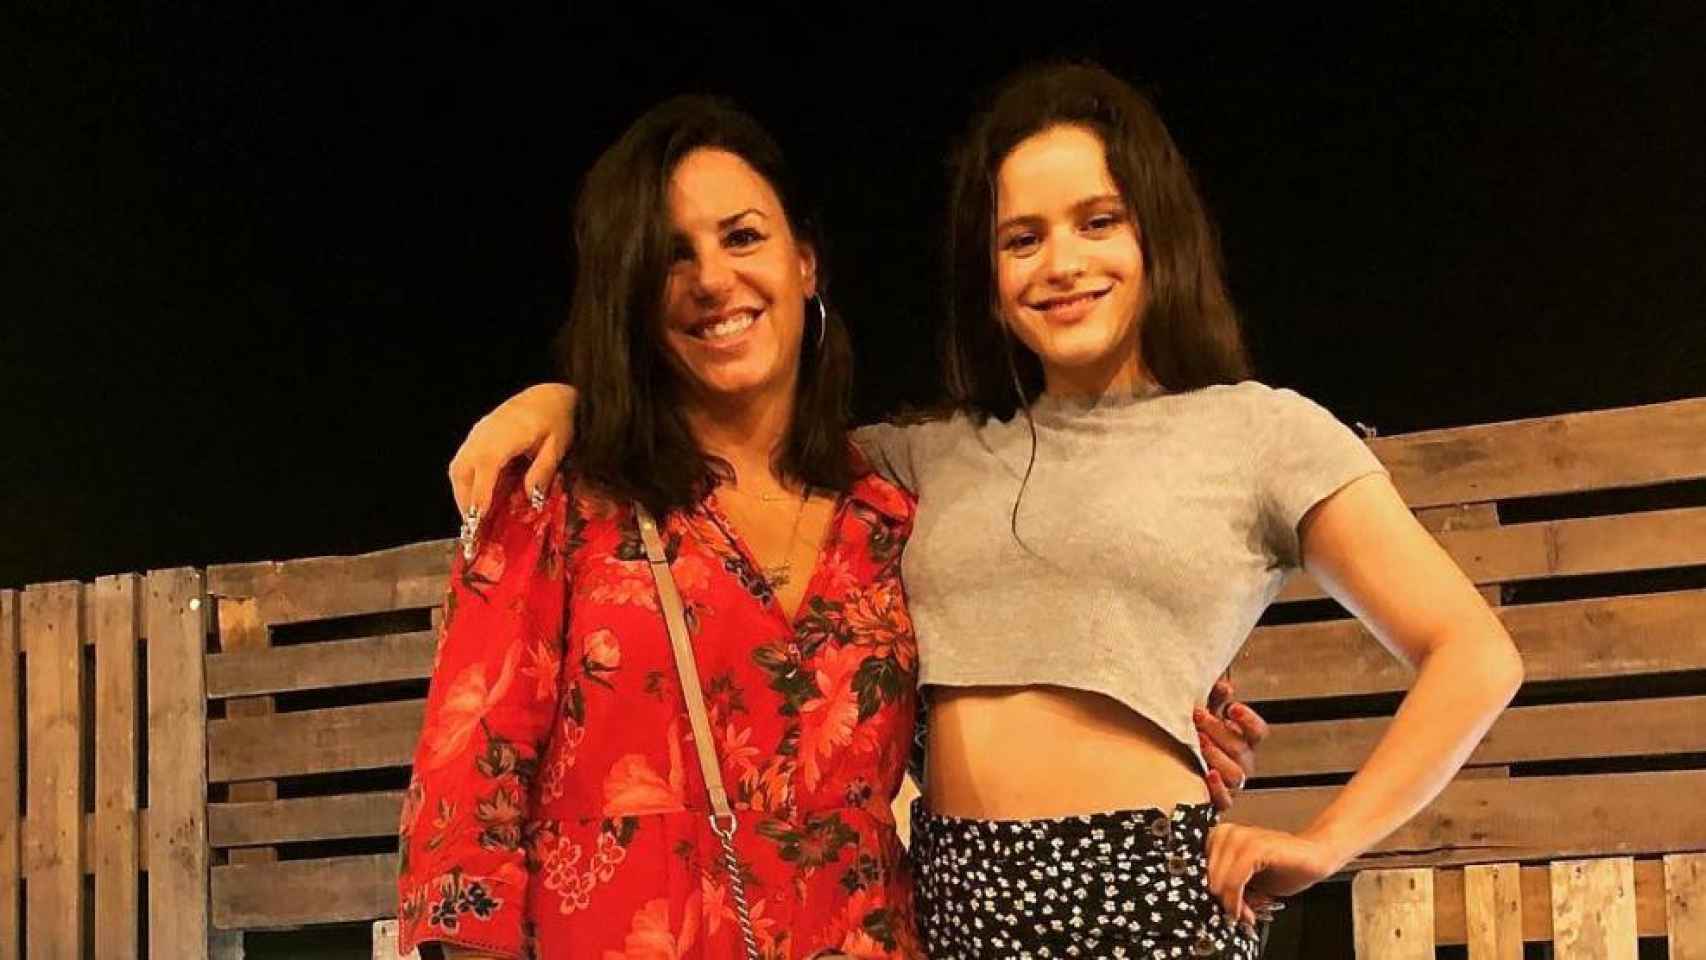 Rebeca León y Rosalía en una publicación en el perfil de Instagram de la cantante el 6 de agosto de 2018